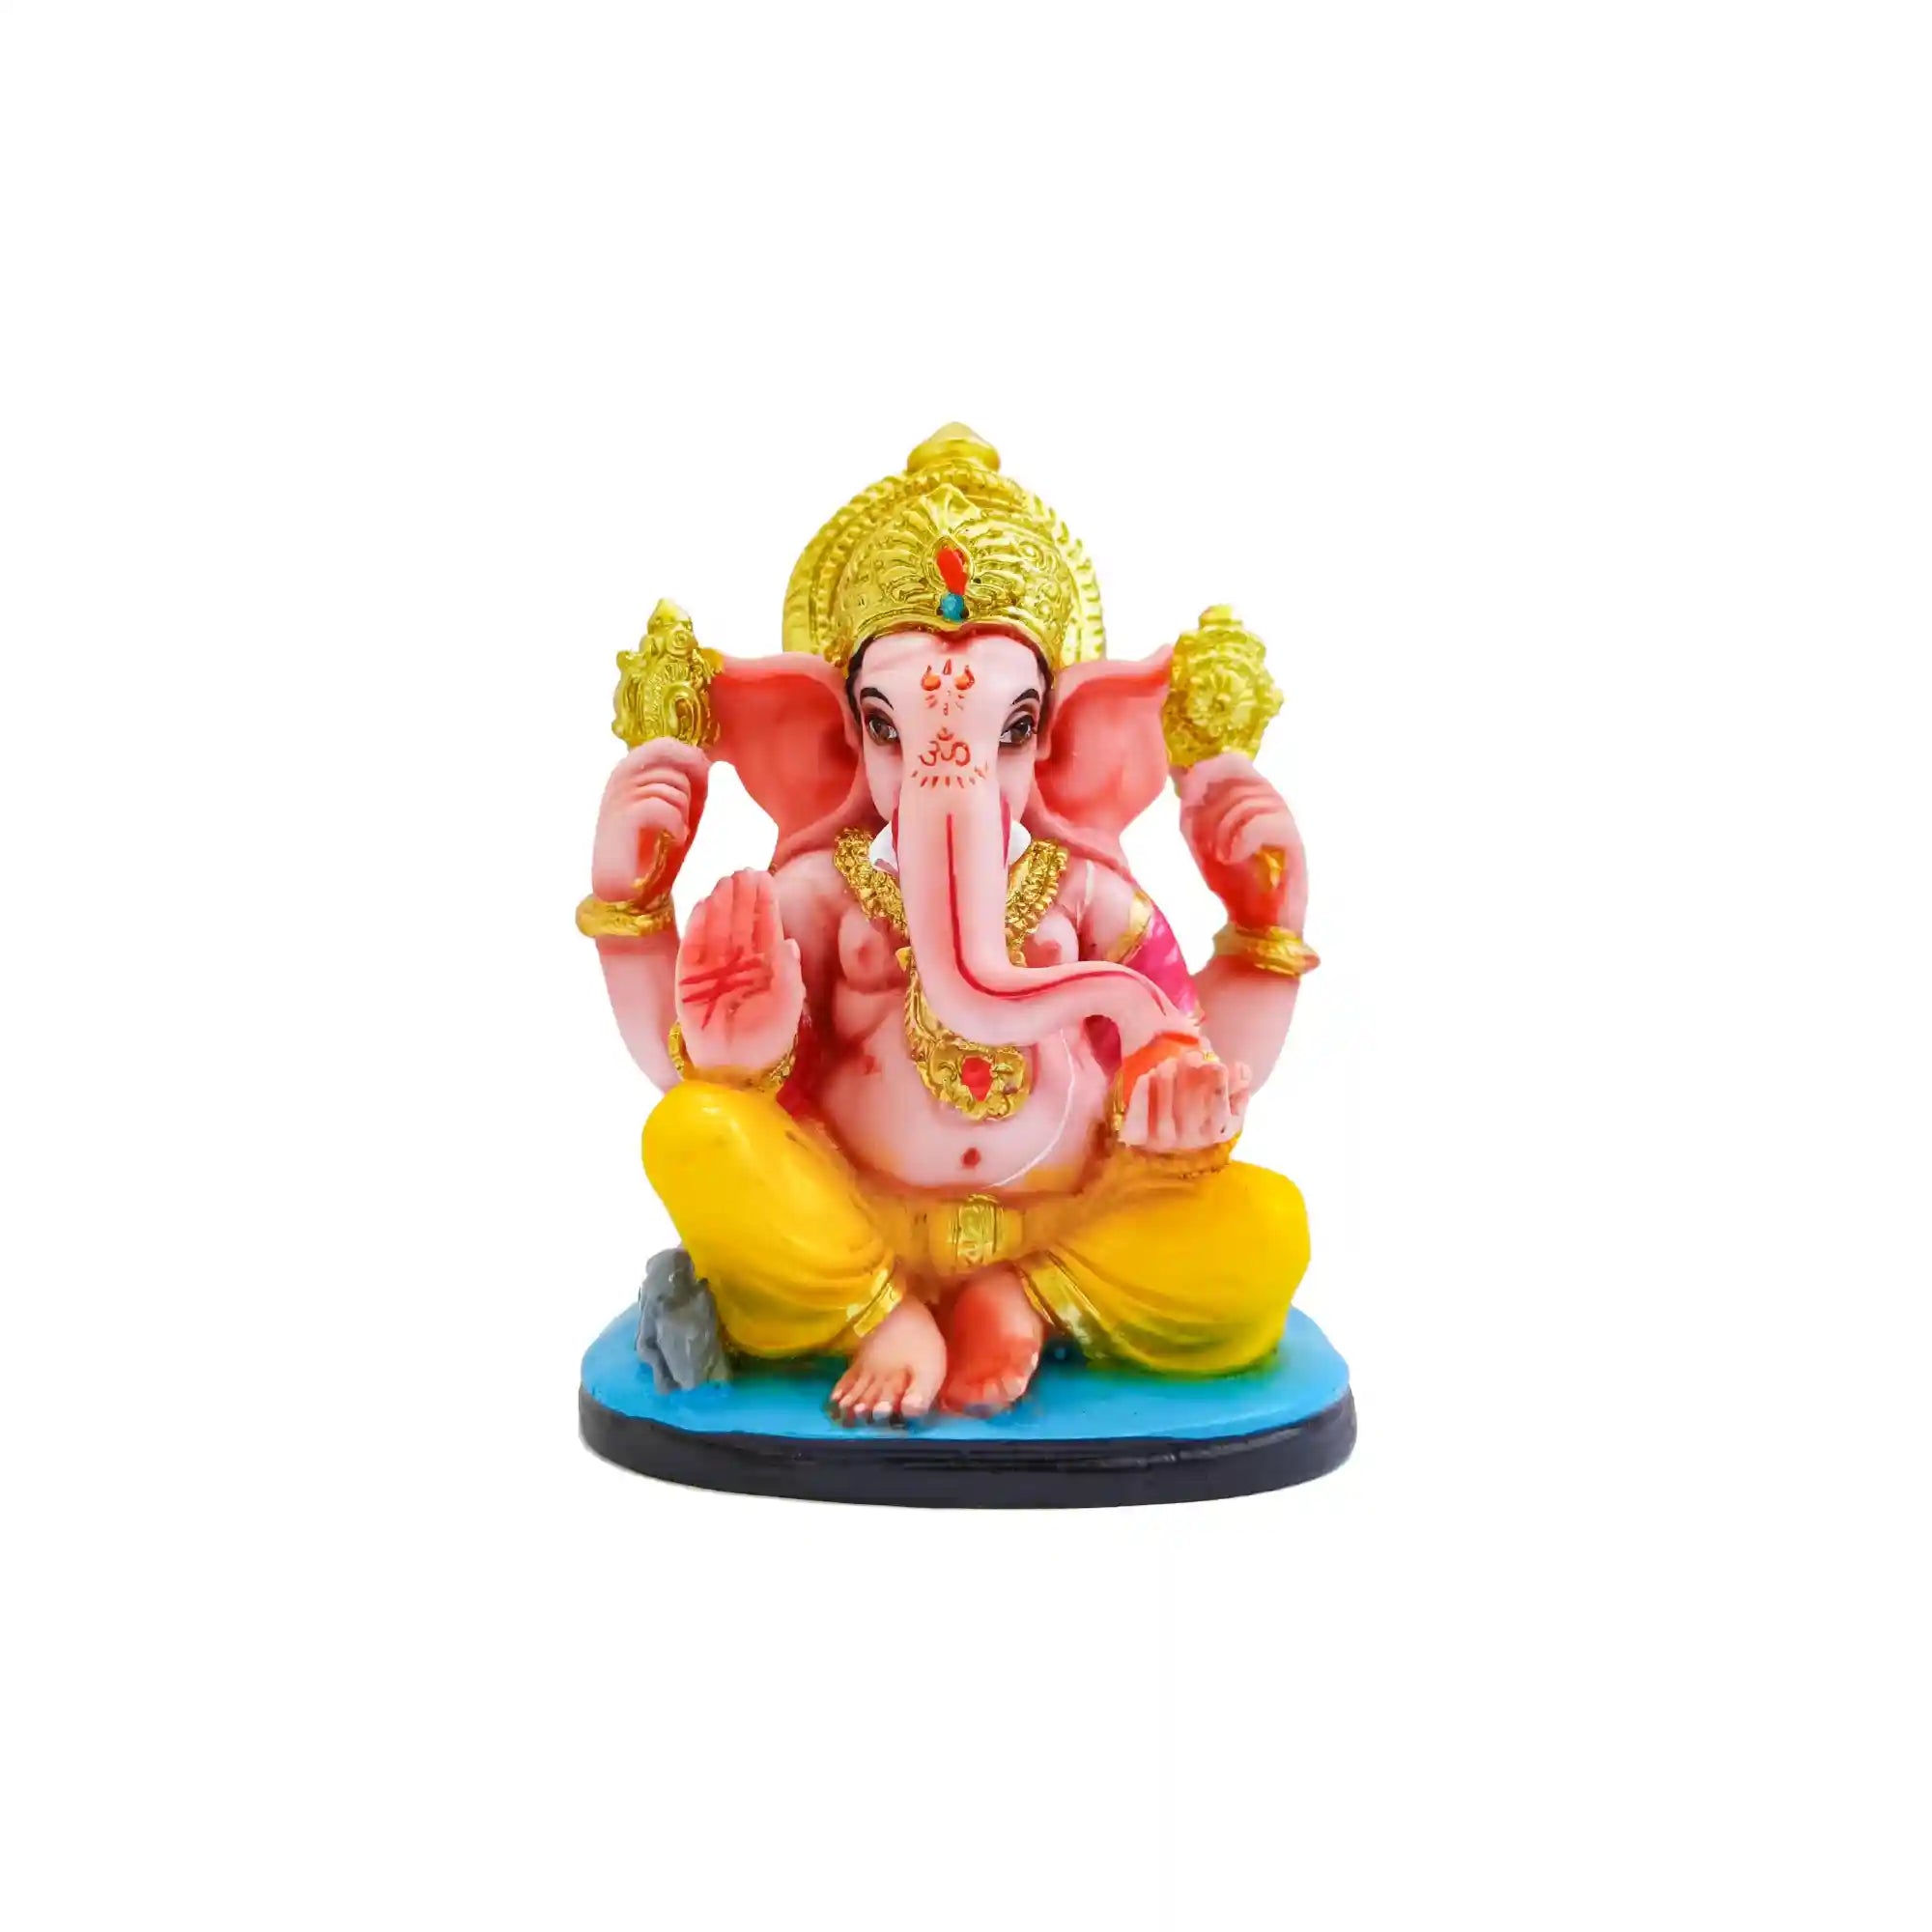 Big Pink Ganesha Statue for Gifts GI 06